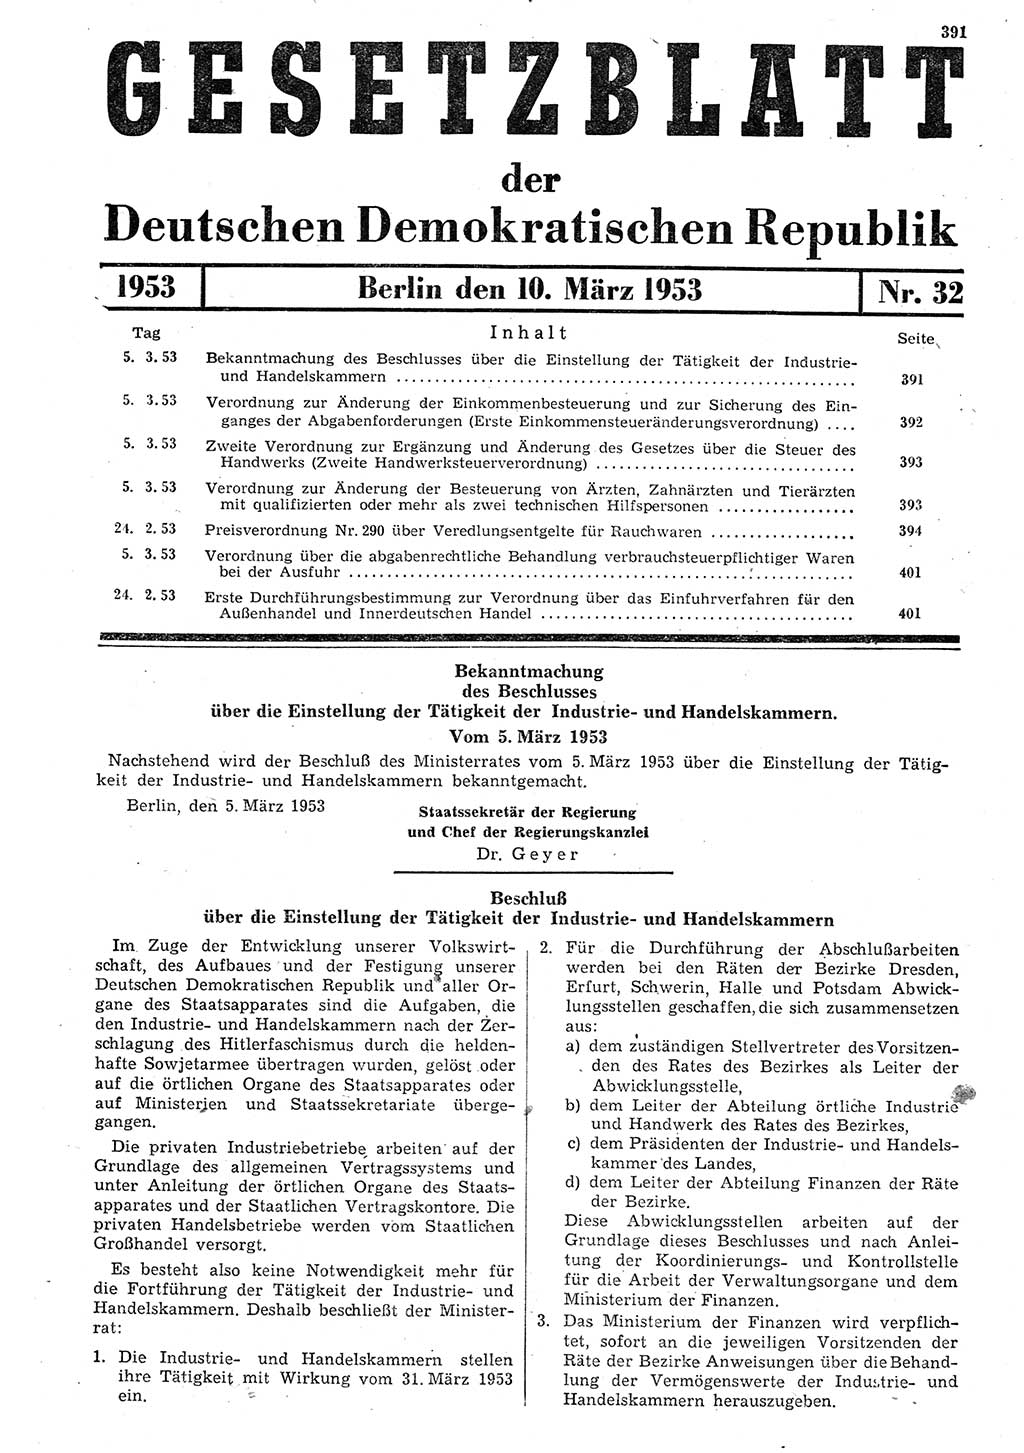 Gesetzblatt (GBl.) der Deutschen Demokratischen Republik (DDR) 1953, Seite 391 (GBl. DDR 1953, S. 391)